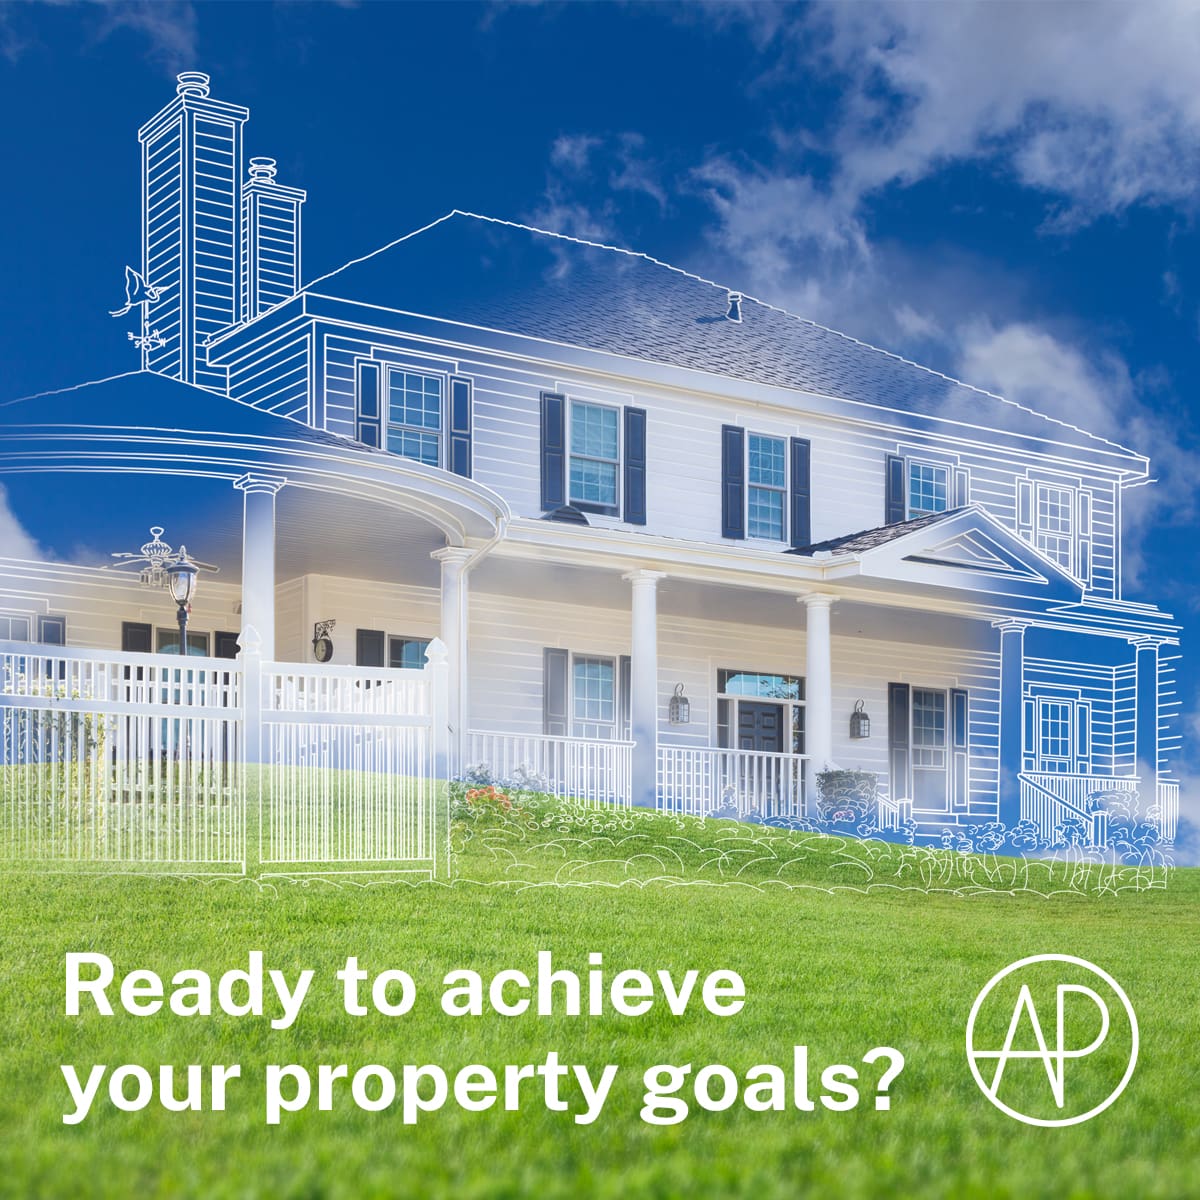 Property goals